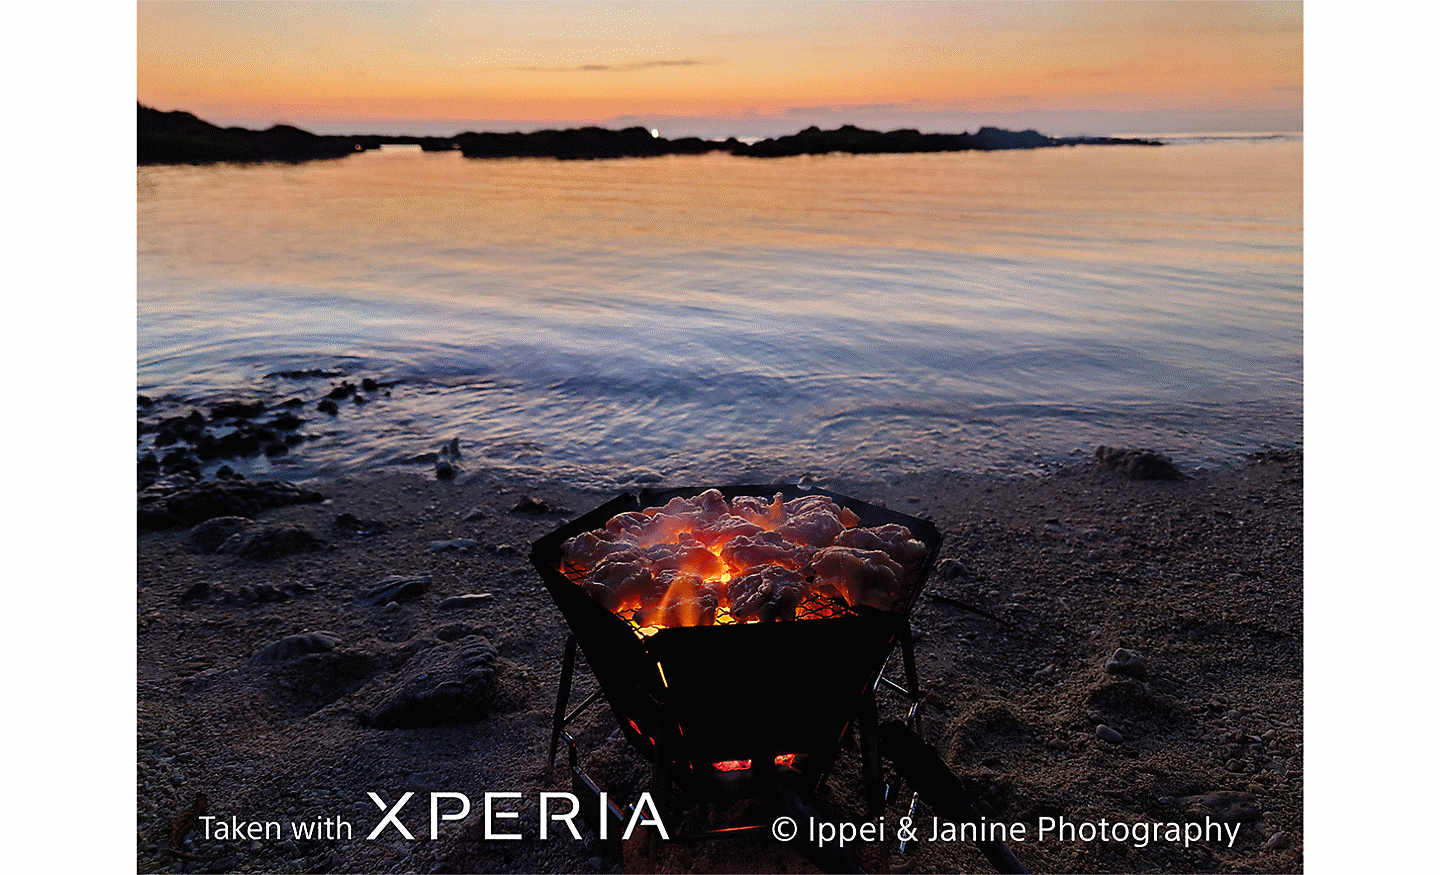 Một hố lửa lấp lánh trên bãi biển, hướng ra mặt nước vào lúc hoàng hôn. Trên ảnh có dòng chữ "Taken with XPERIA ©Ippei & Janine Photography” (Chụp bằng XPERIA ©Ippei & Janine Photography).